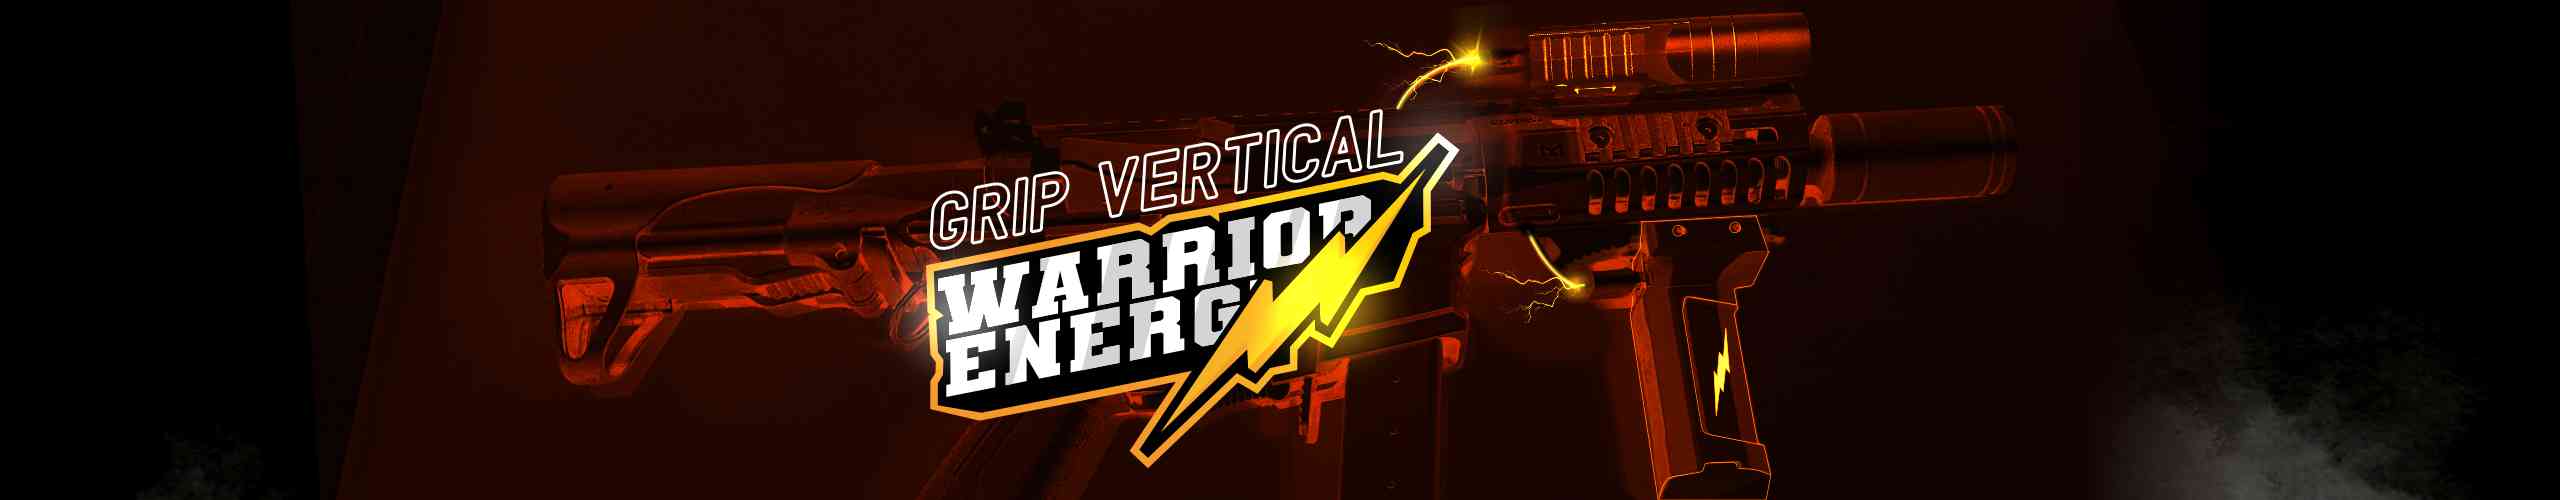 grip-vertical-warrior-energy